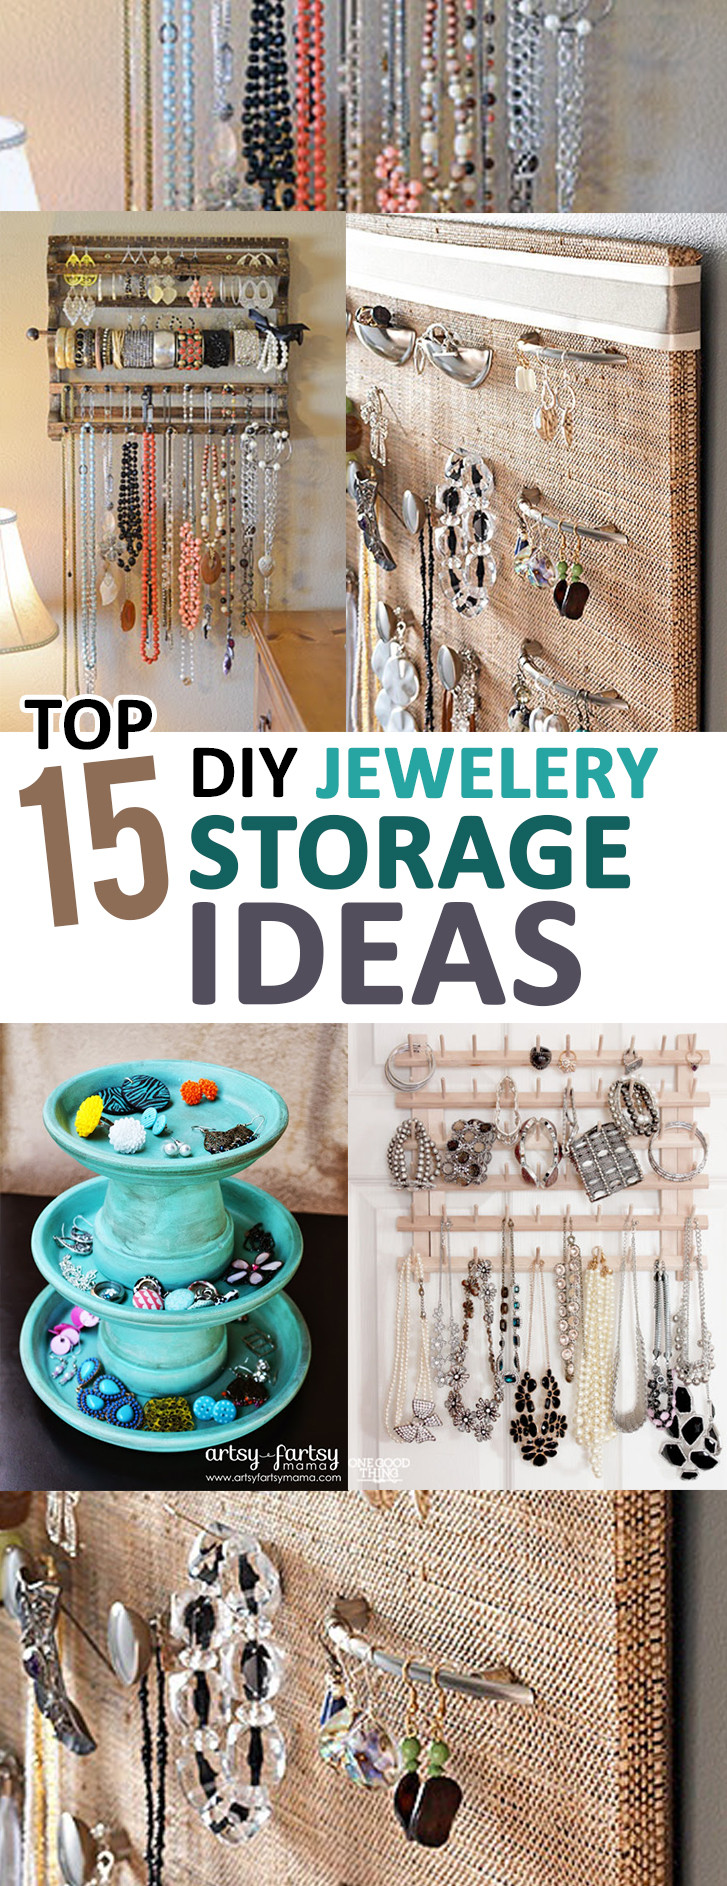 Best ideas about DIY Jewelry Storage Ideas
. Save or Pin Top 15 DIY Jewelry Storage Ideas Now.